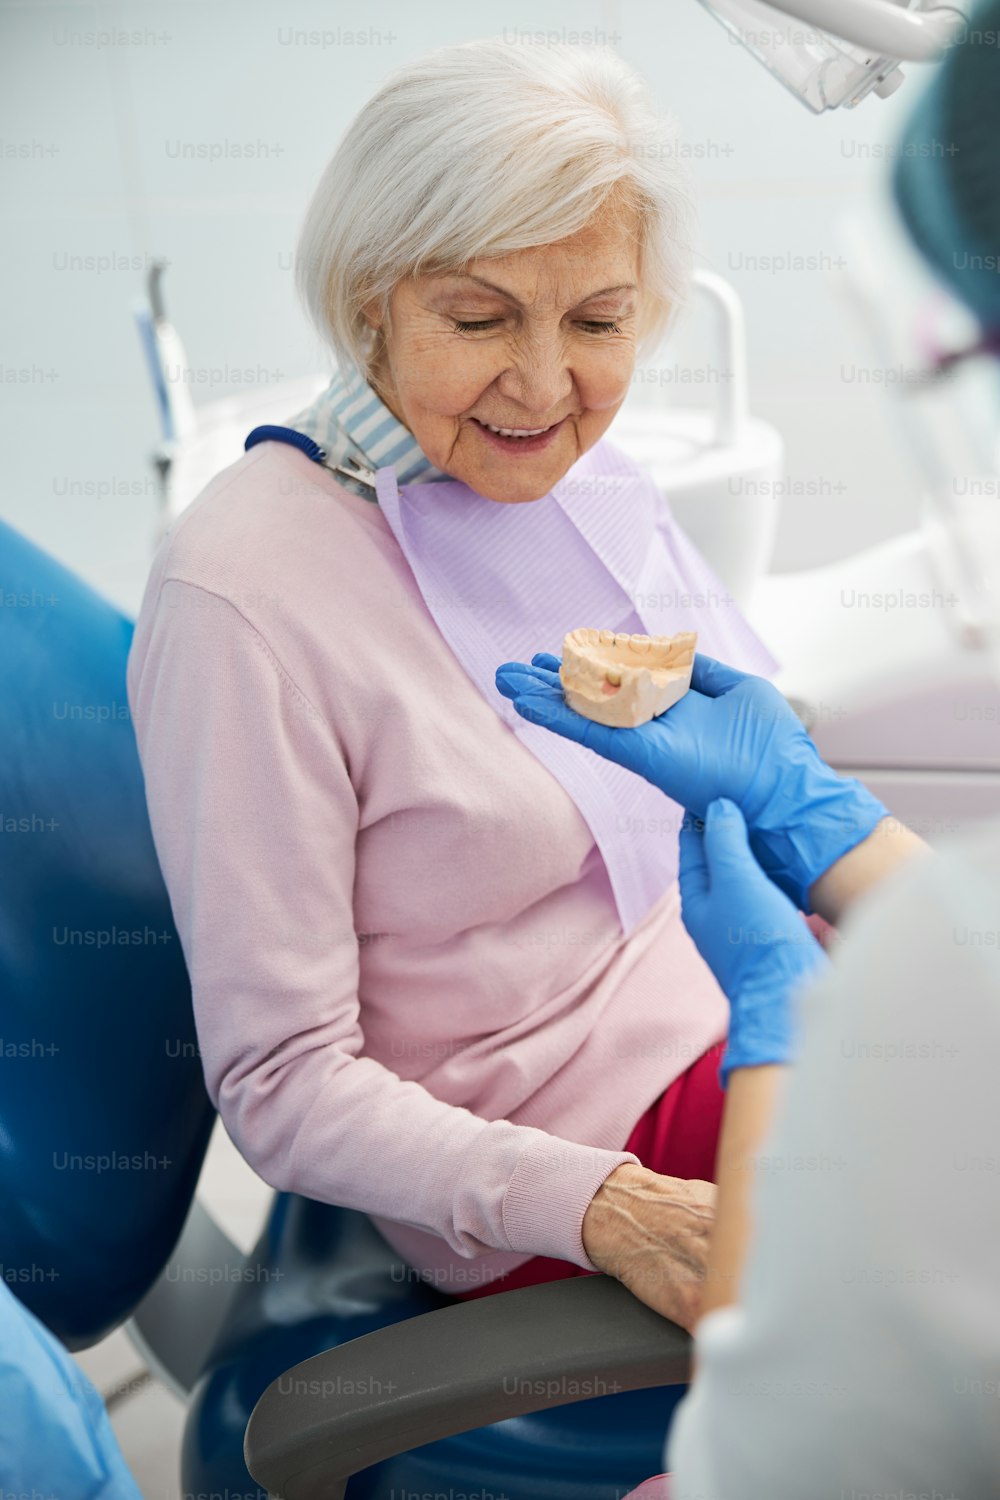 Mandíbula inferior moldeada en una mano en el guante del dentista frente a una anciana